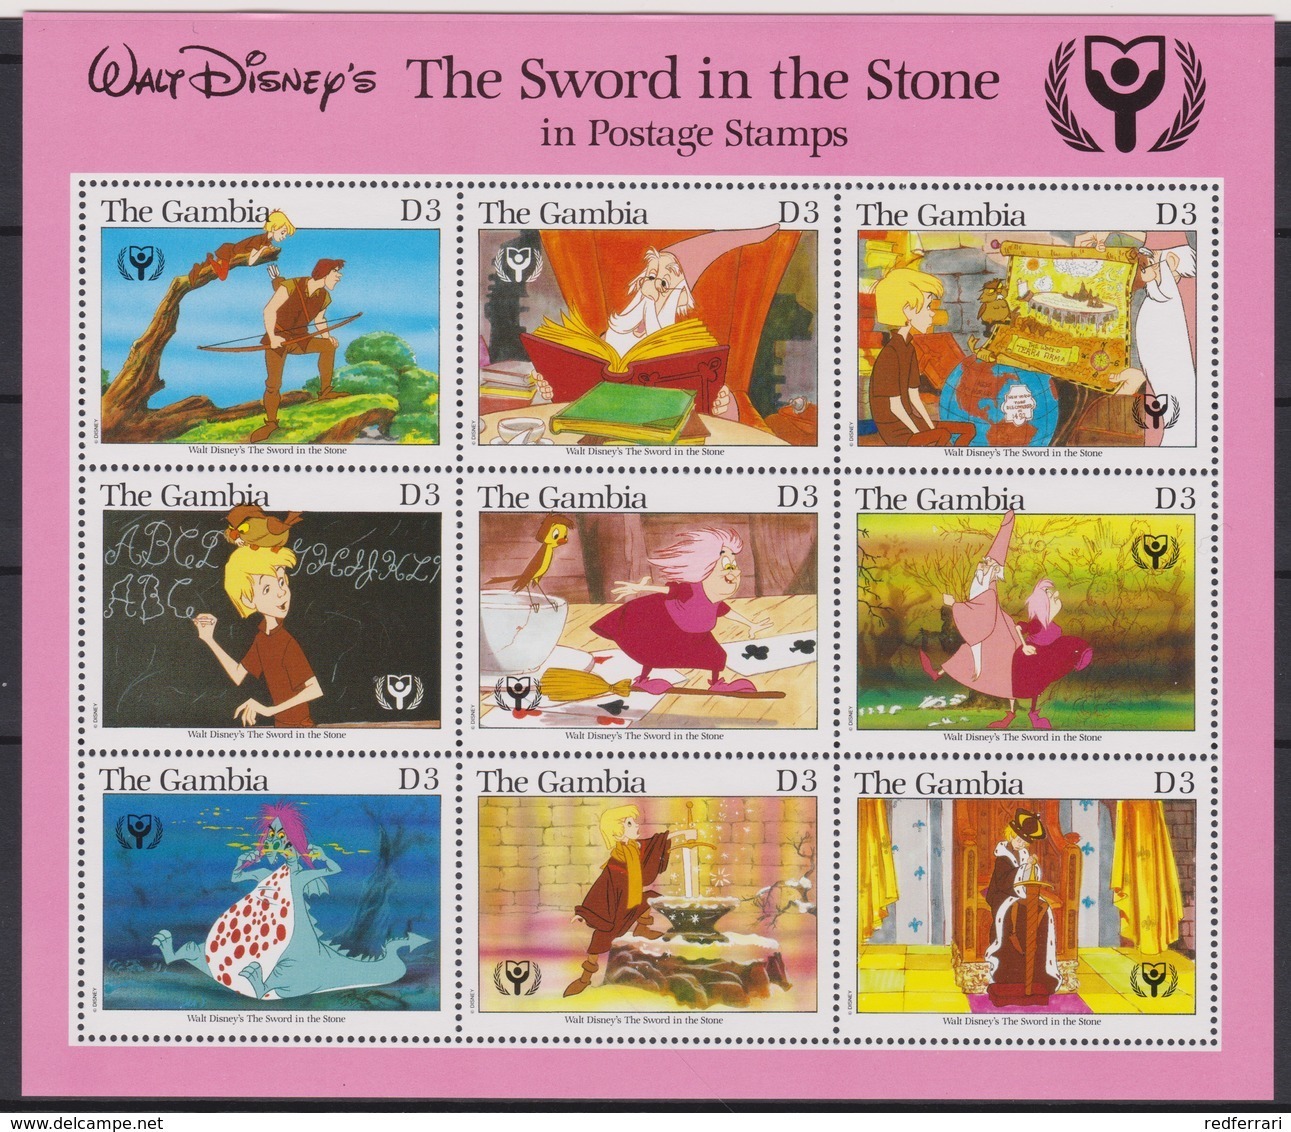 2457  -  The GAMBIA - Disney - 1990 -  ( Het Zwaart In De Steen ) In Postage Stamps. - Disney